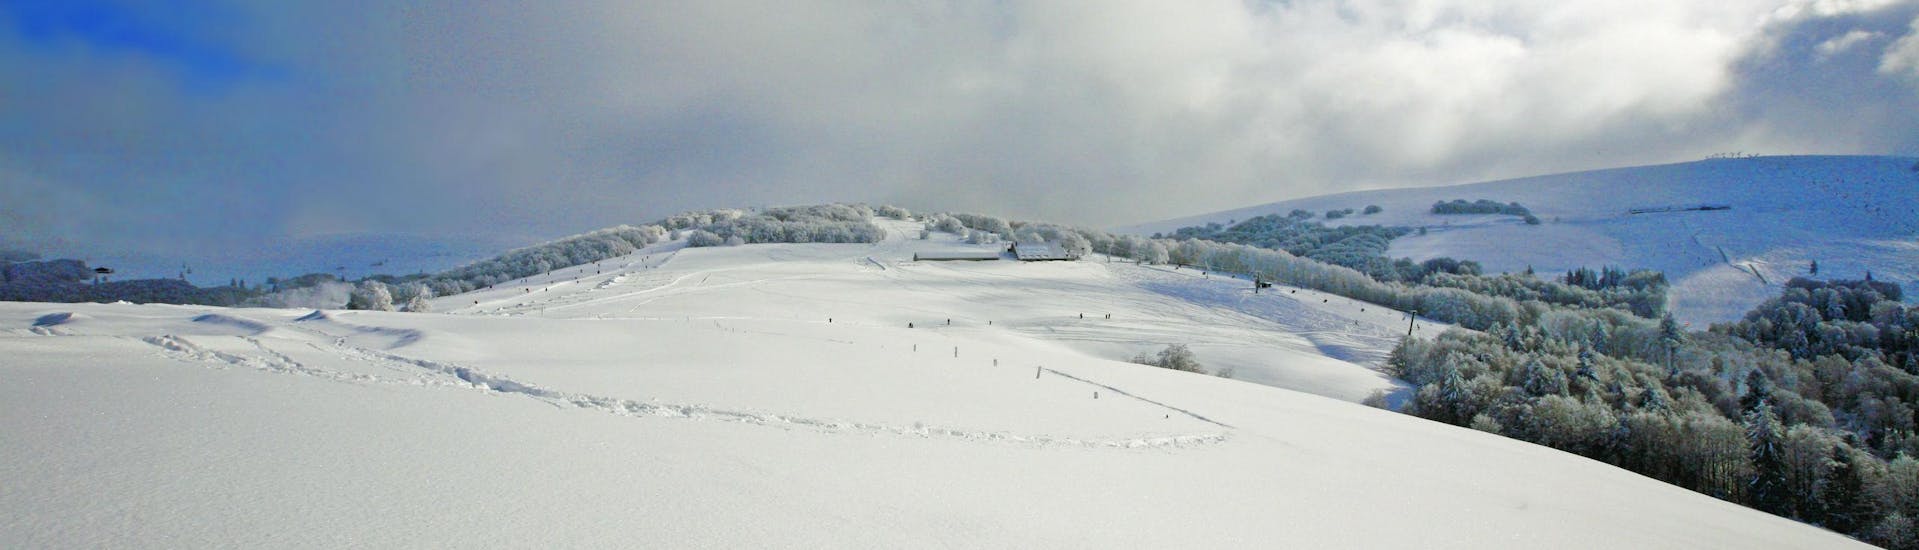 Une image des collines maintenant couverte de neige du départment des Vosges, où l'école de ski locale offre une sélection diverse de cours de ski.